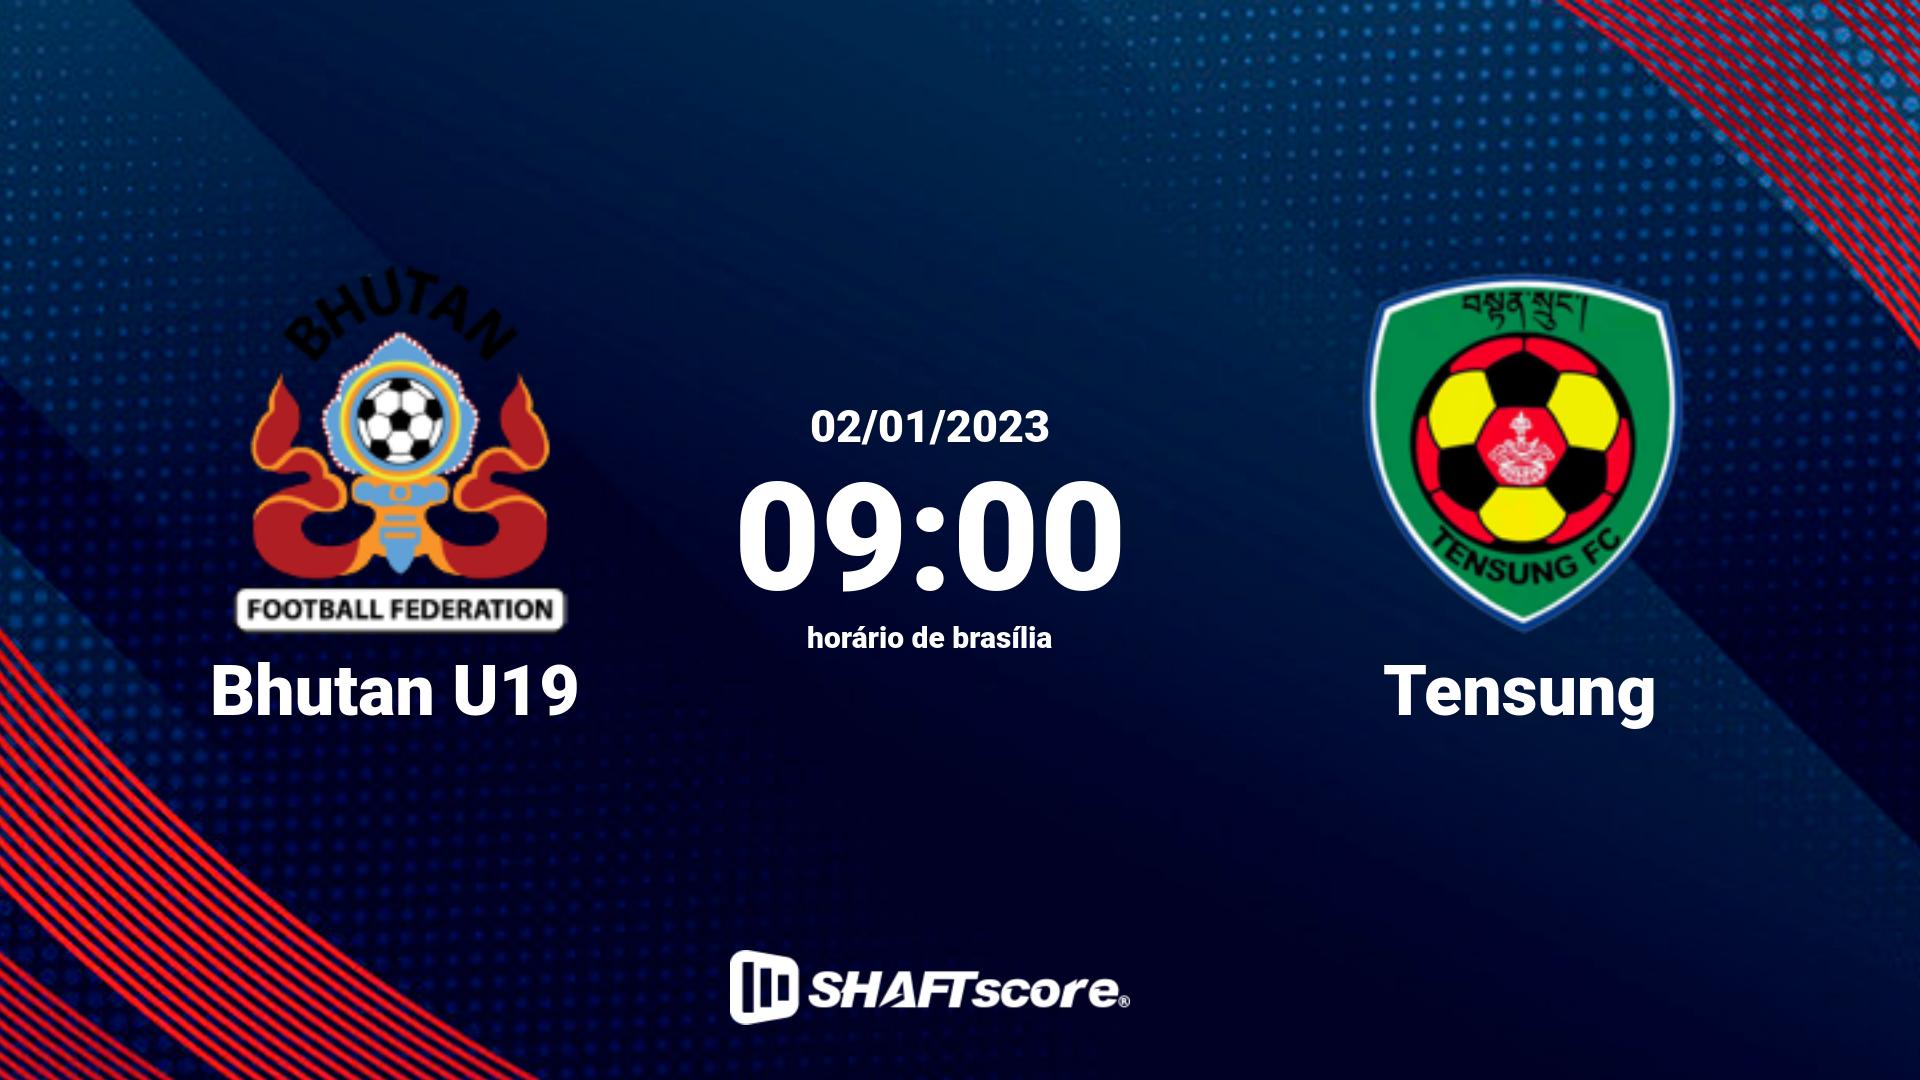 Estatísticas do jogo Bhutan U19 vs Tensung 02.01 09:00